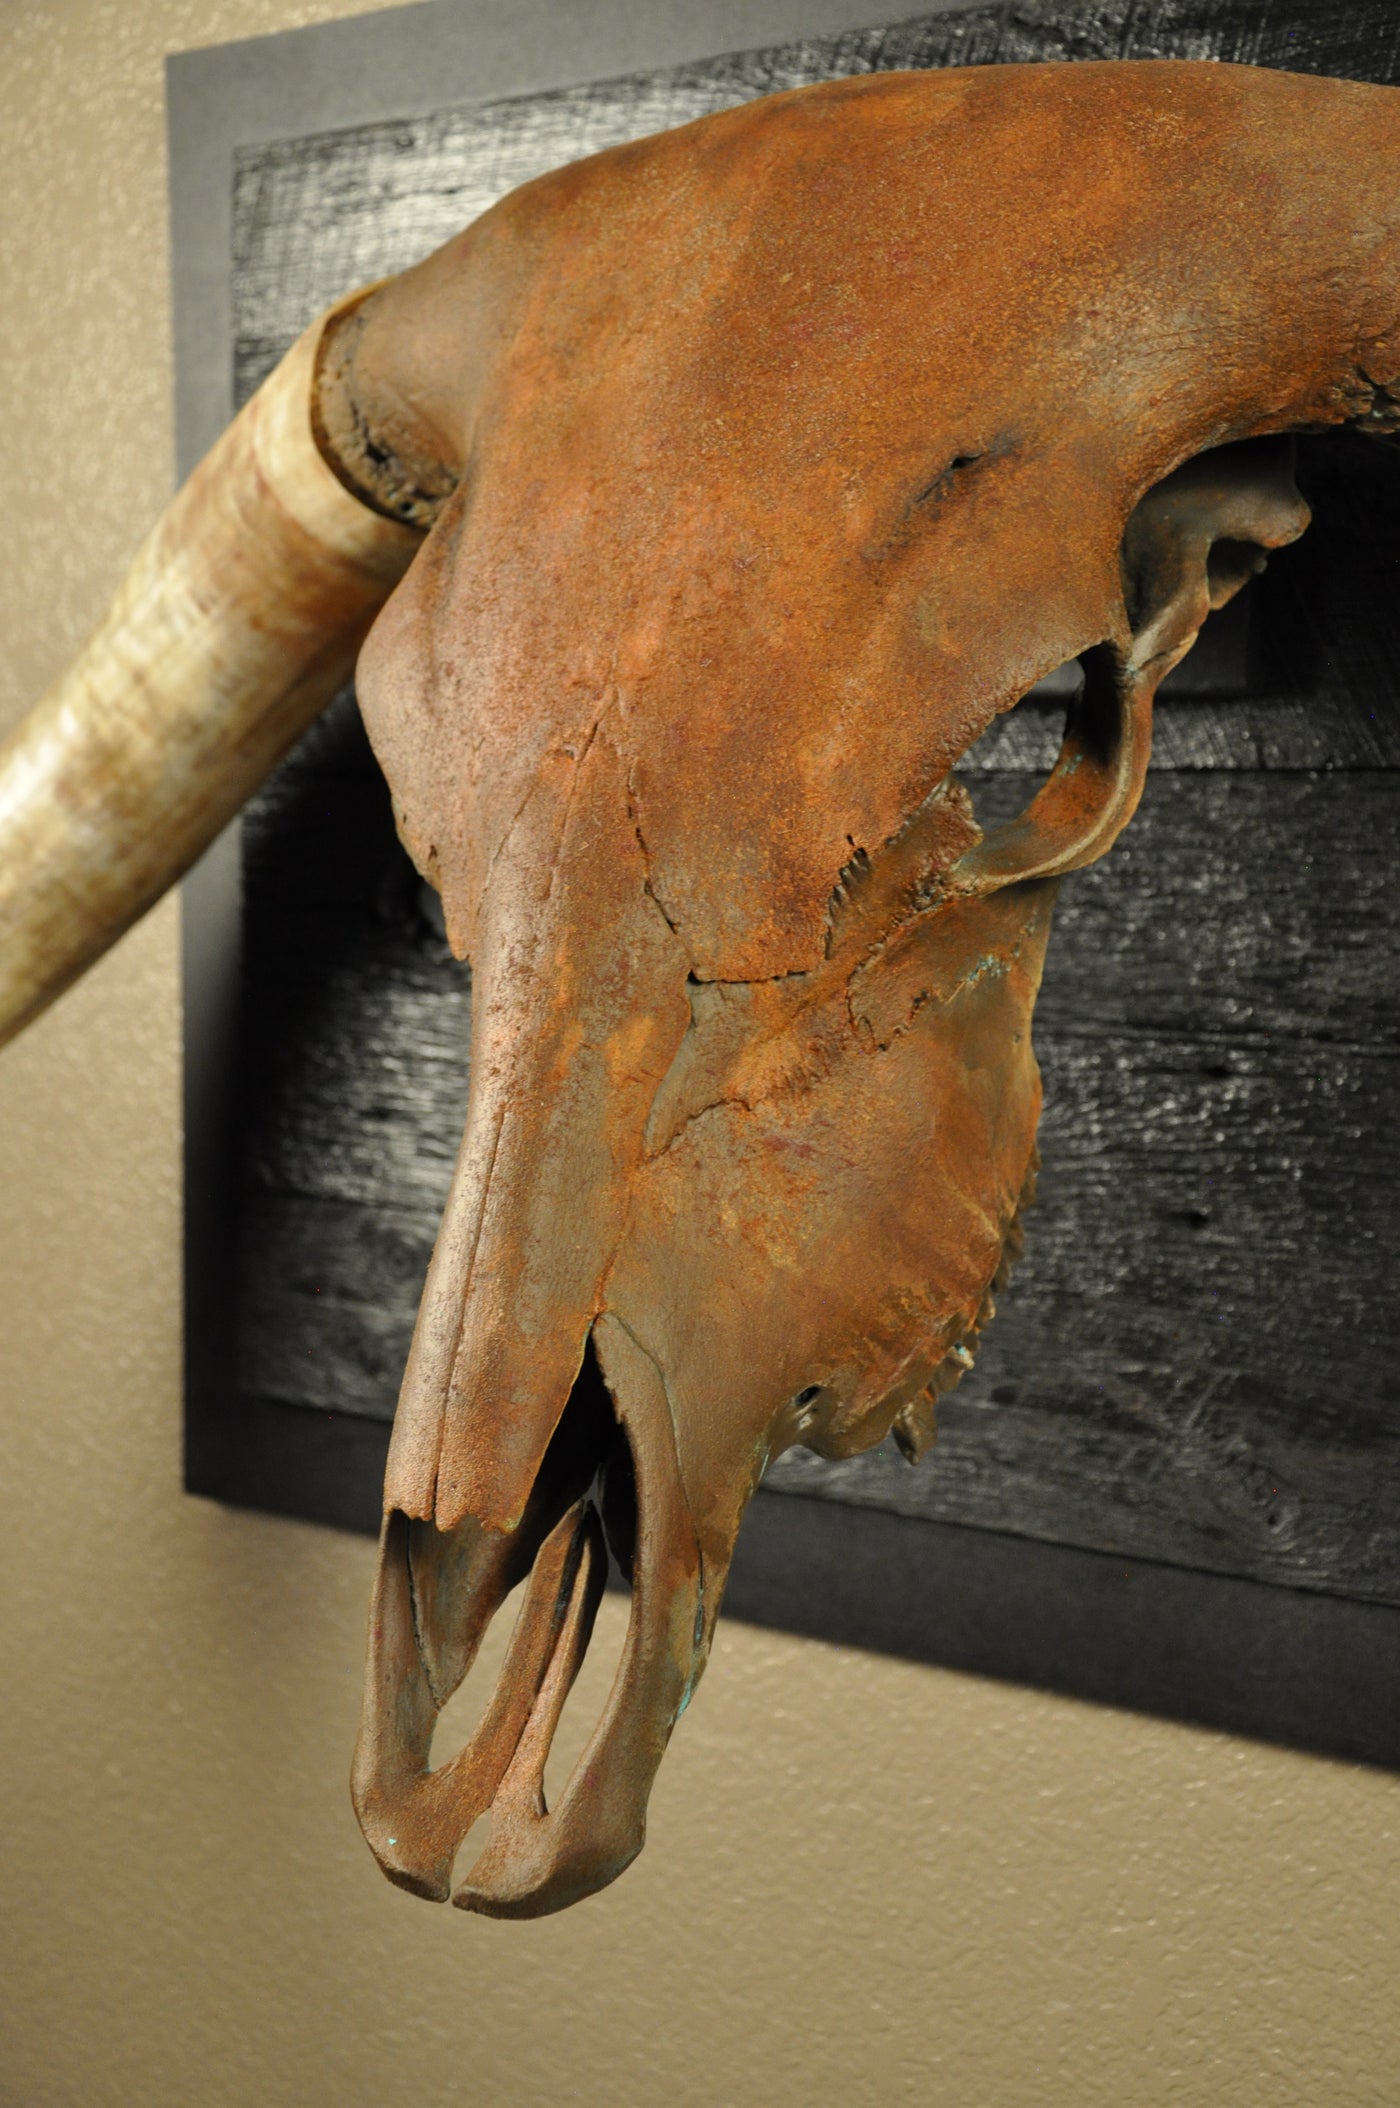 ROUGH RIDER - 5' 3" Longhorn Bull Skull